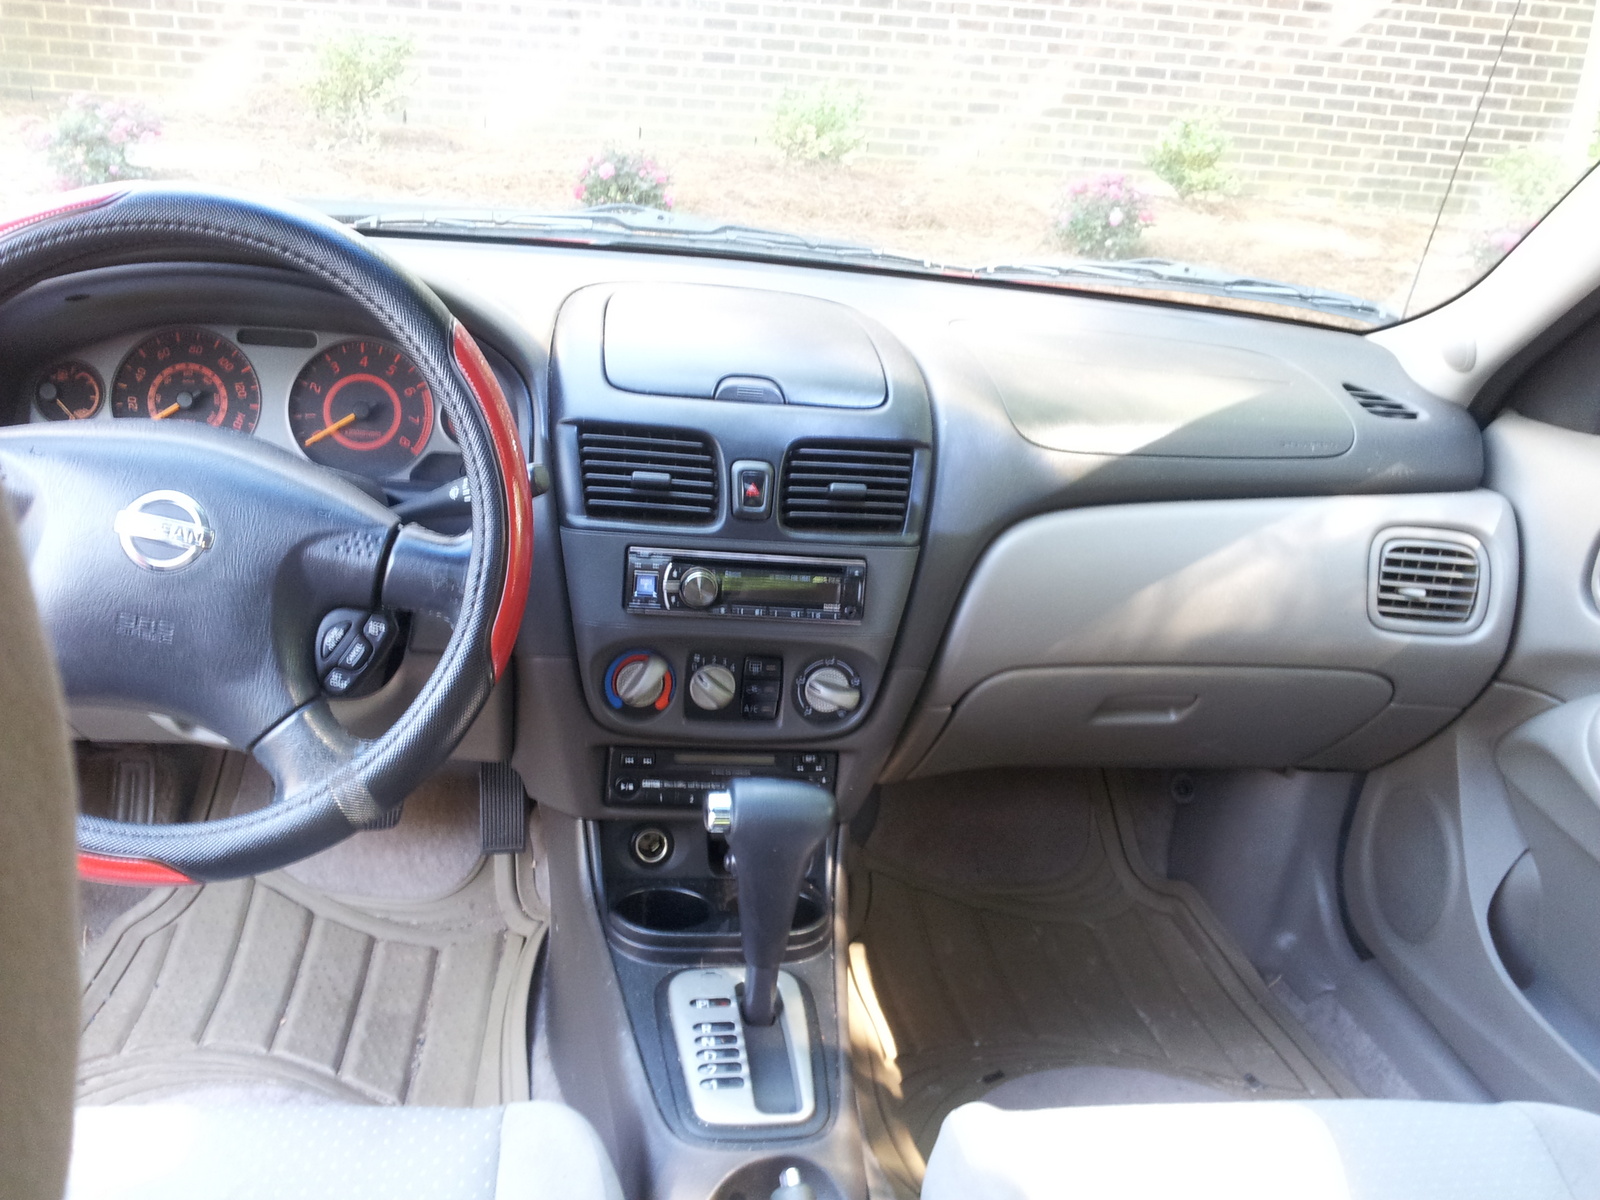 2002 Nissan sentra xe interior #8